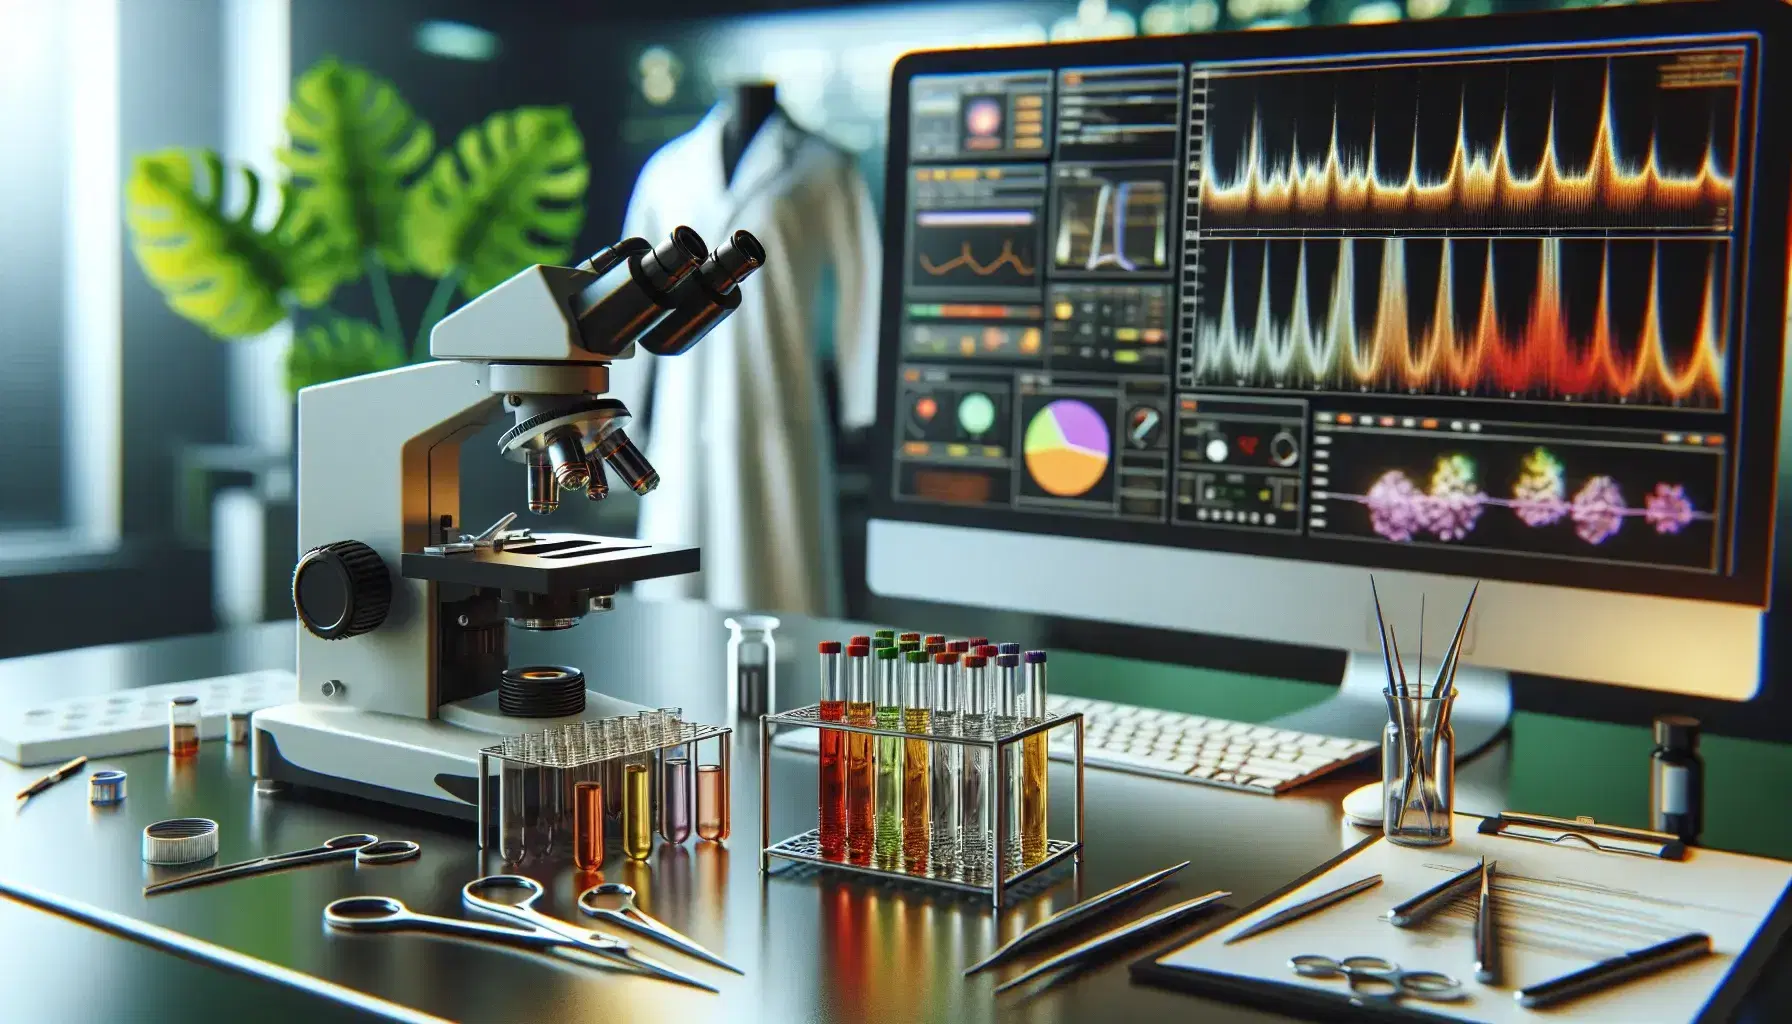 Mesa de laboratorio clínico con microscopio, tubos de ensayo con muestras, herramientas médicas y monitor con gráficos, reflejando un entorno de investigación.